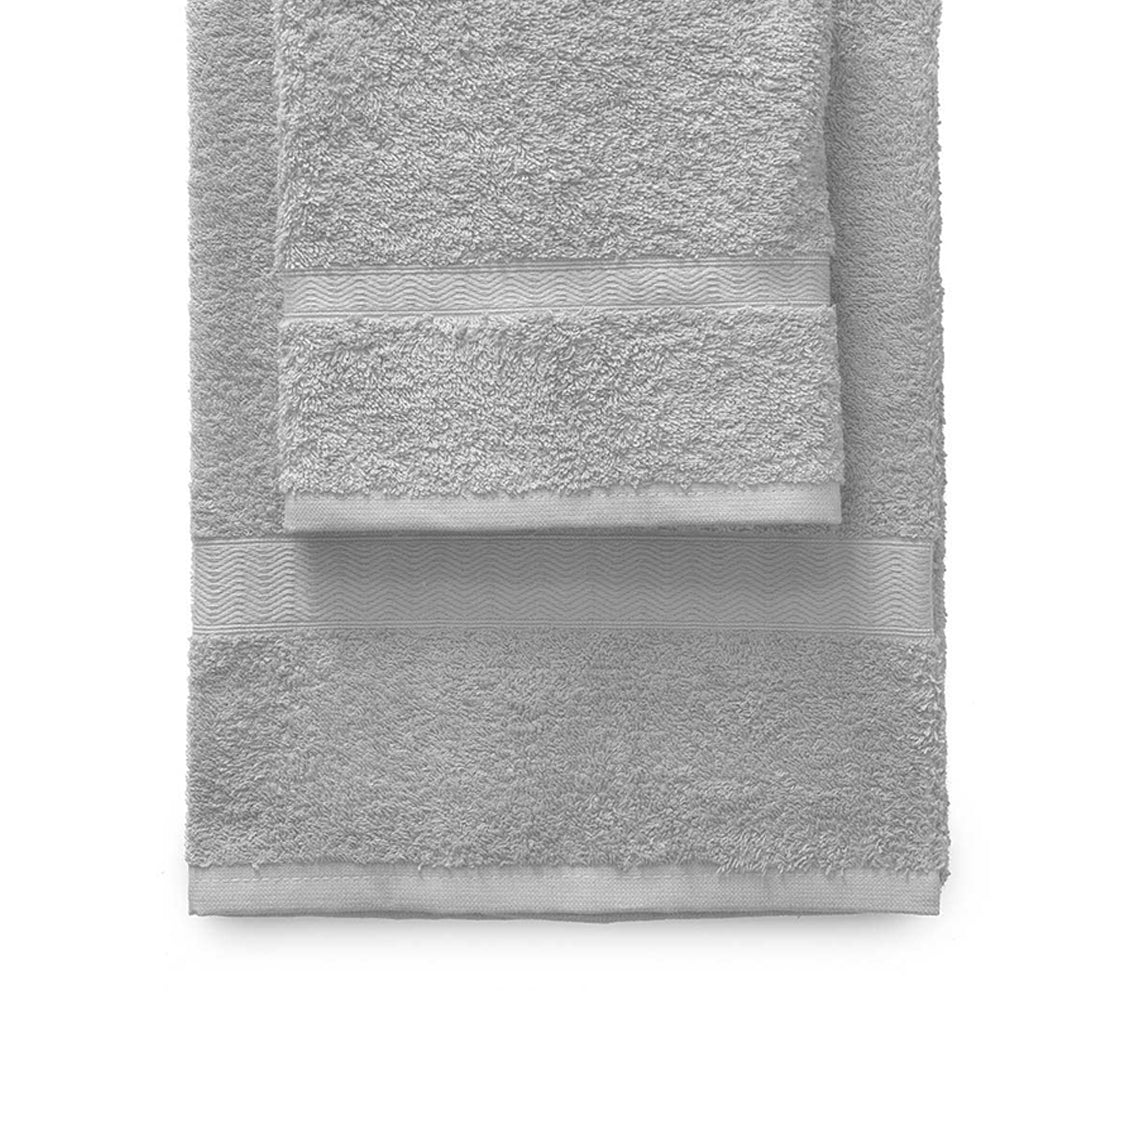 Towel set 1+1 Gabel mod. Plain dyed in 420 g/m2 sponge